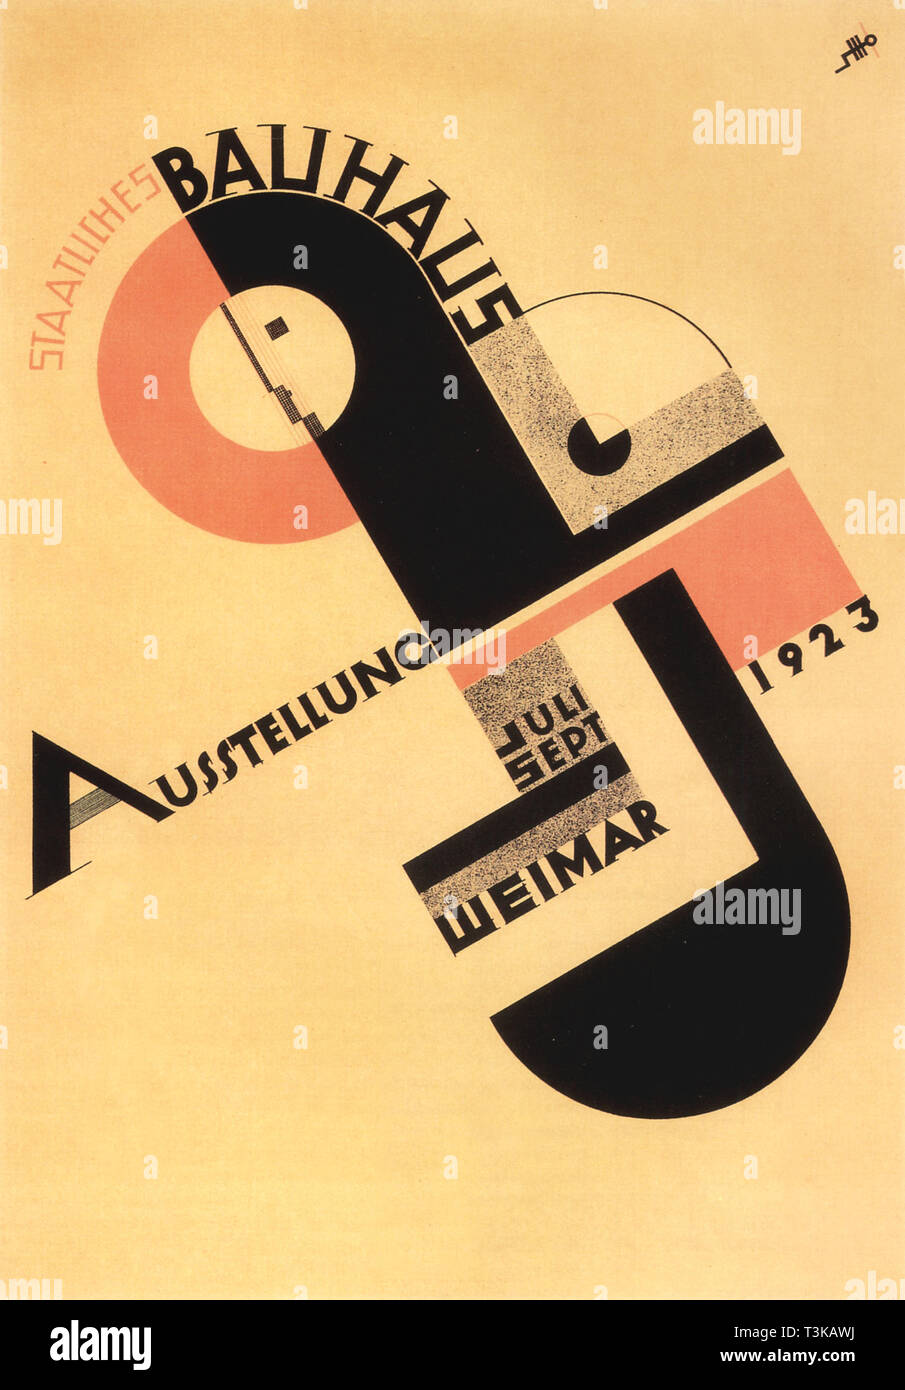 Bauhaus exhibition. Postcard, 1923. Creator: Schmidt, Joost (1893-1948). Stock Photo